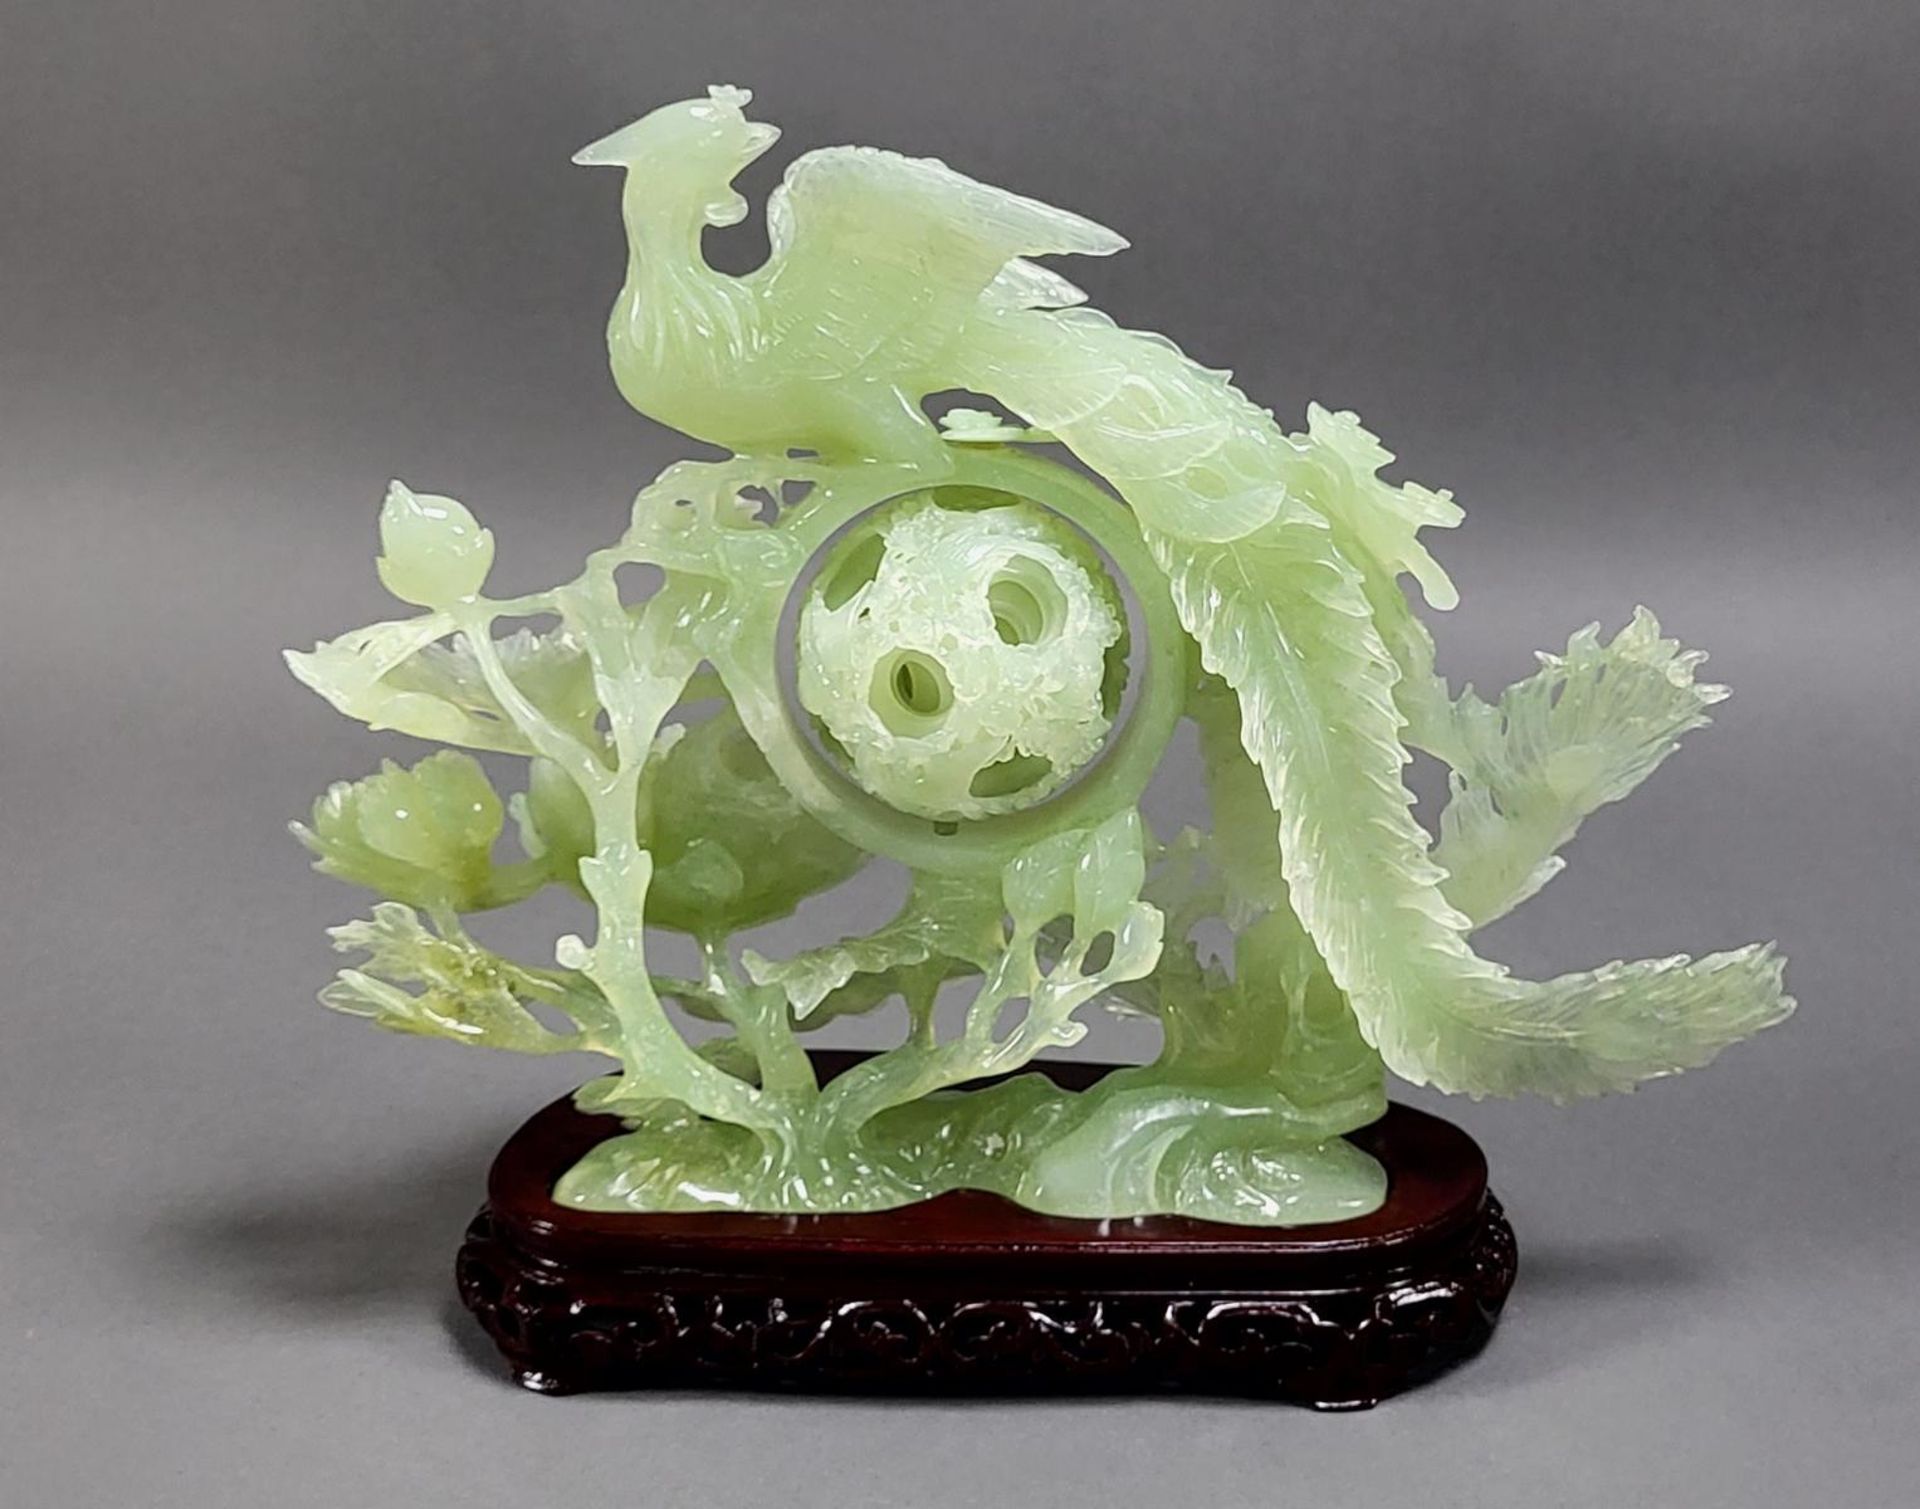 Jadeskulptur, Phönix auf Blumenstrauch mit Wunderkugel